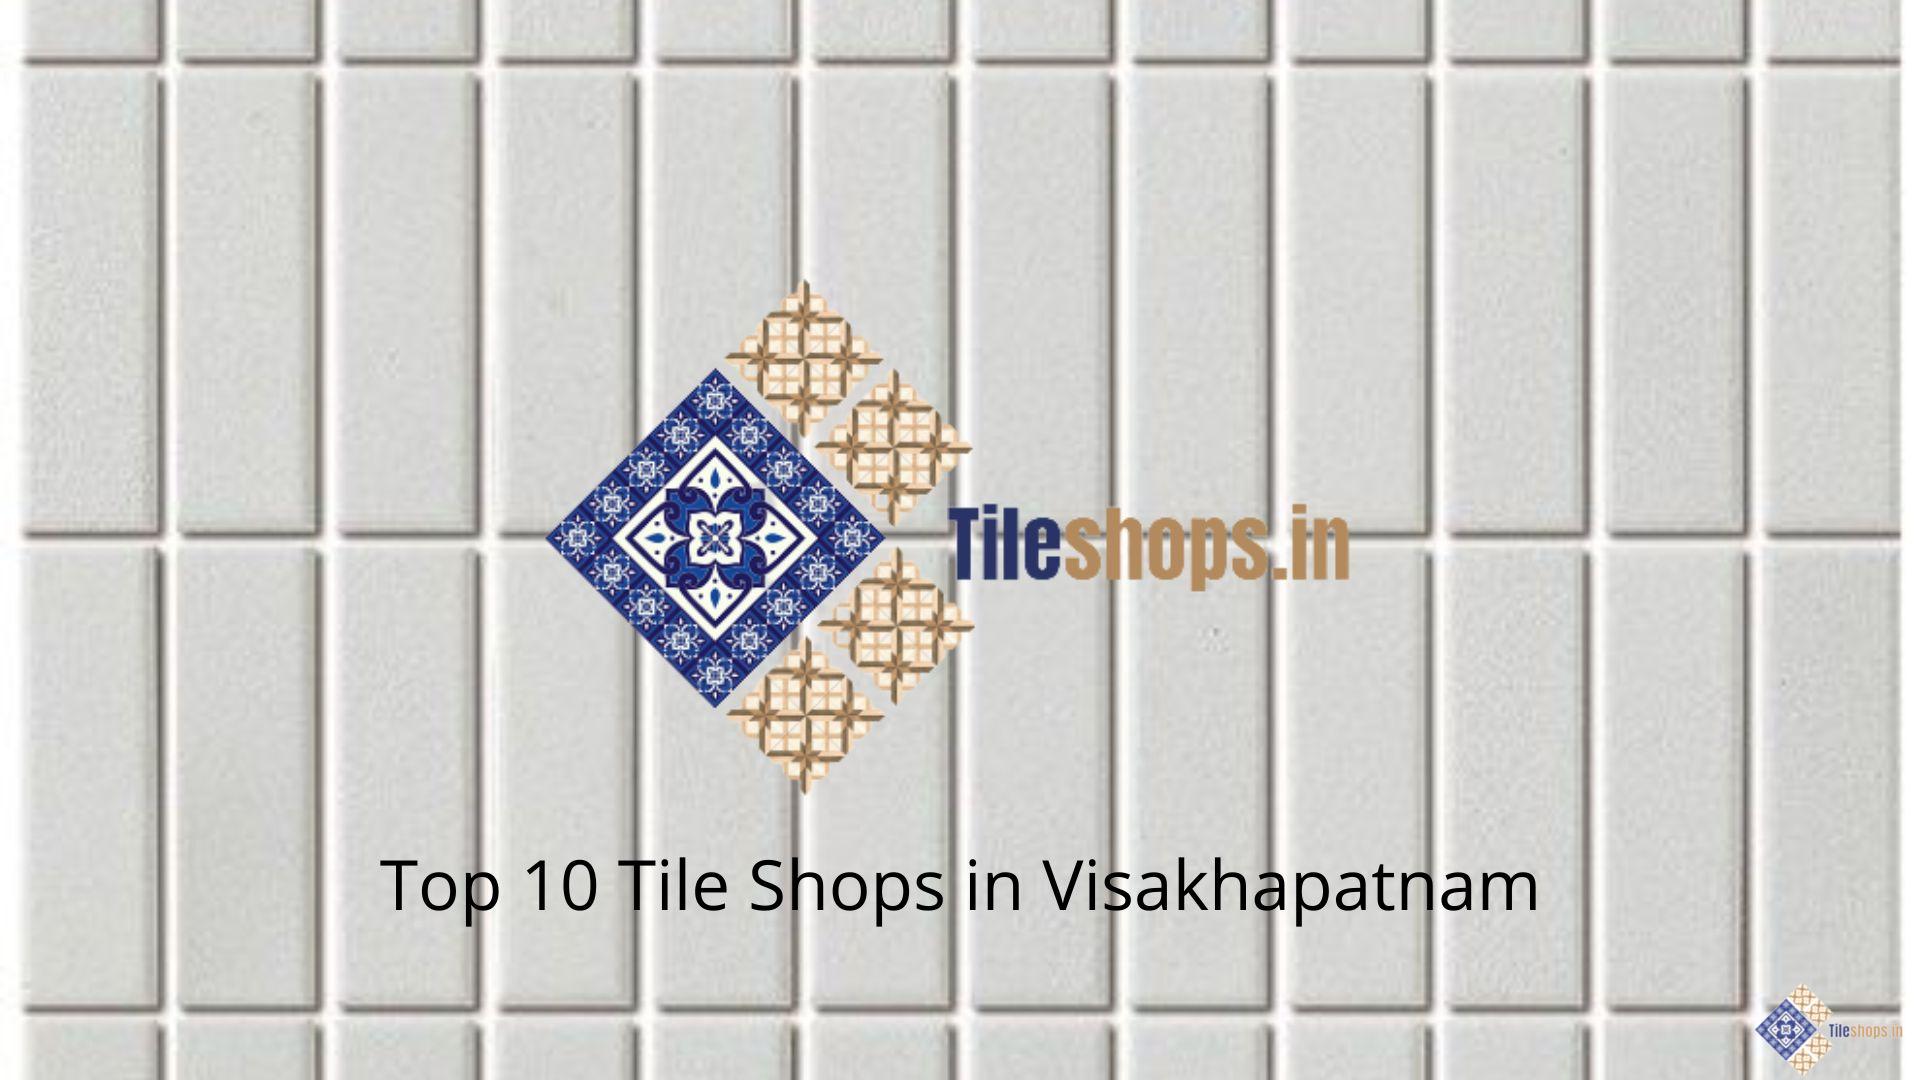 Top 10 Tile Shops in Visakhapatnam